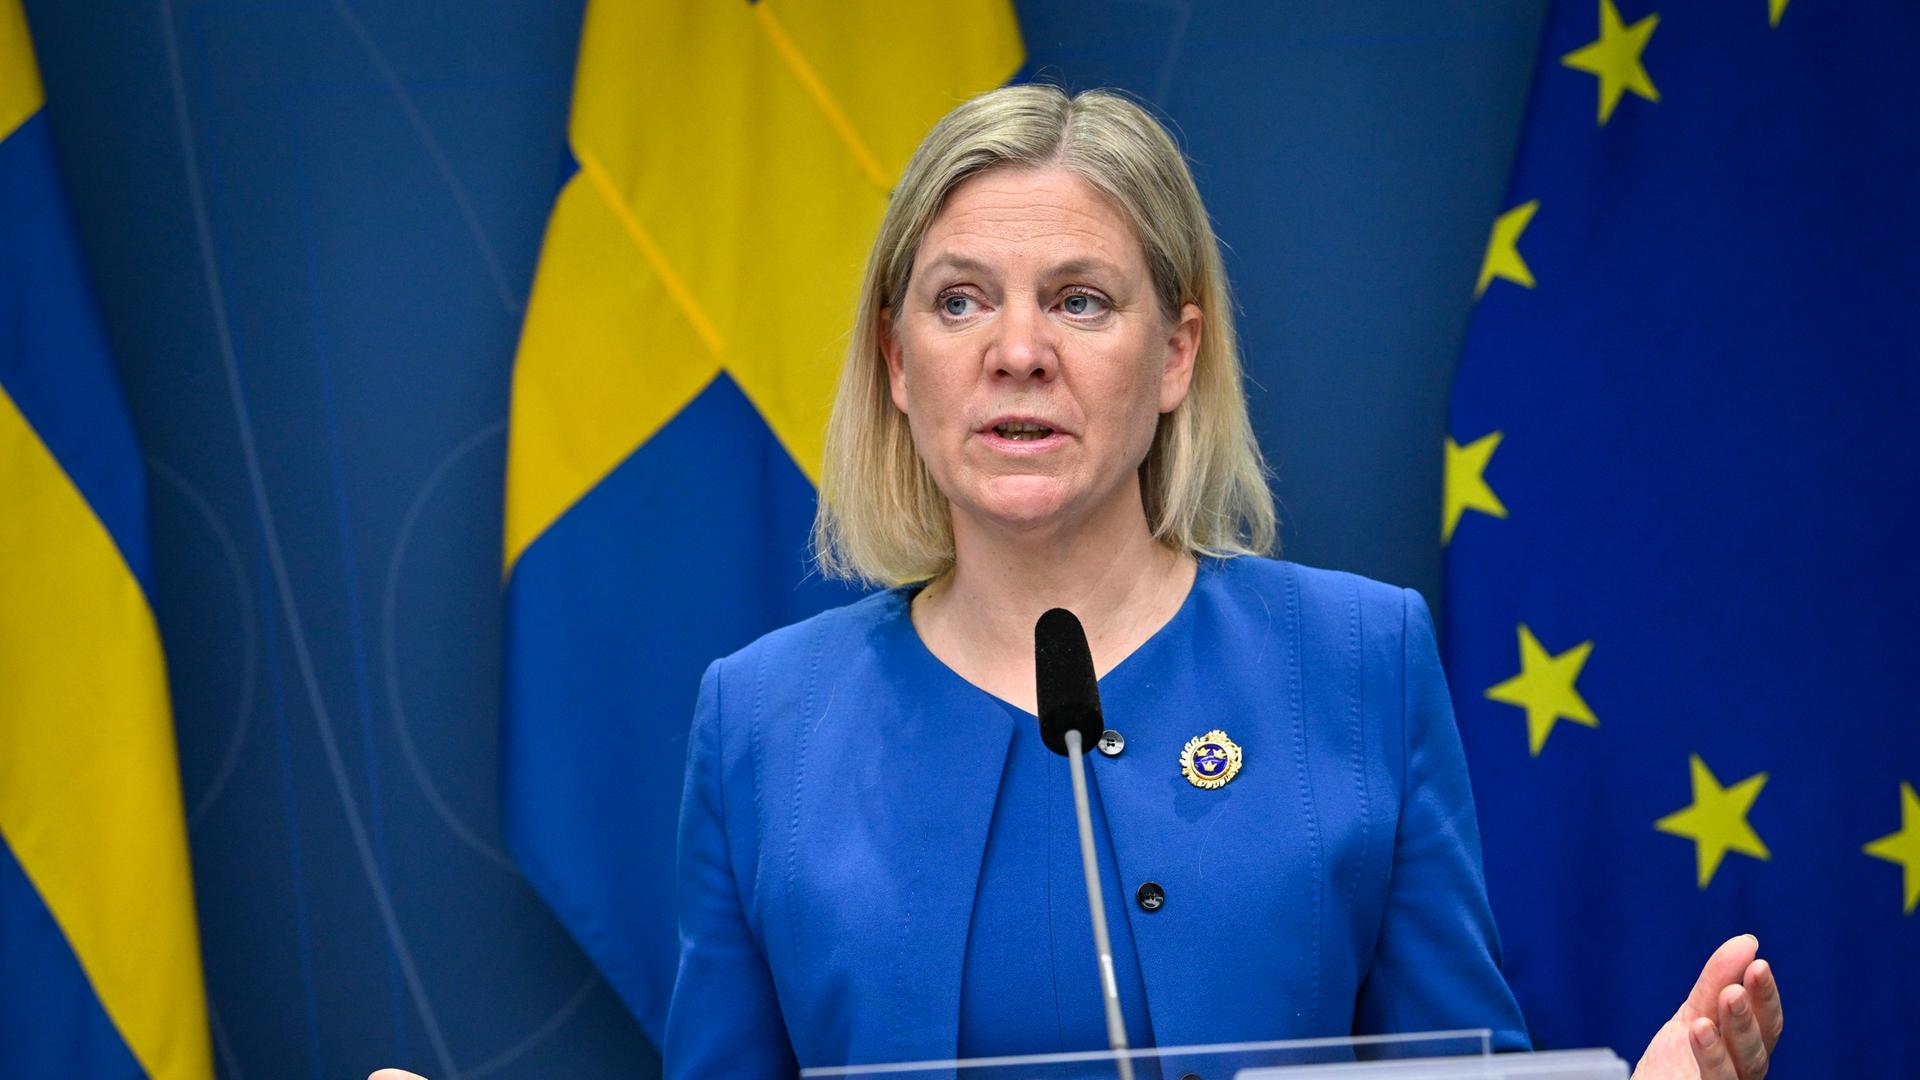 NATO-Mitgliedschaft - Schweden und Finnland signalisieren Türkei Dialogbereitschaft